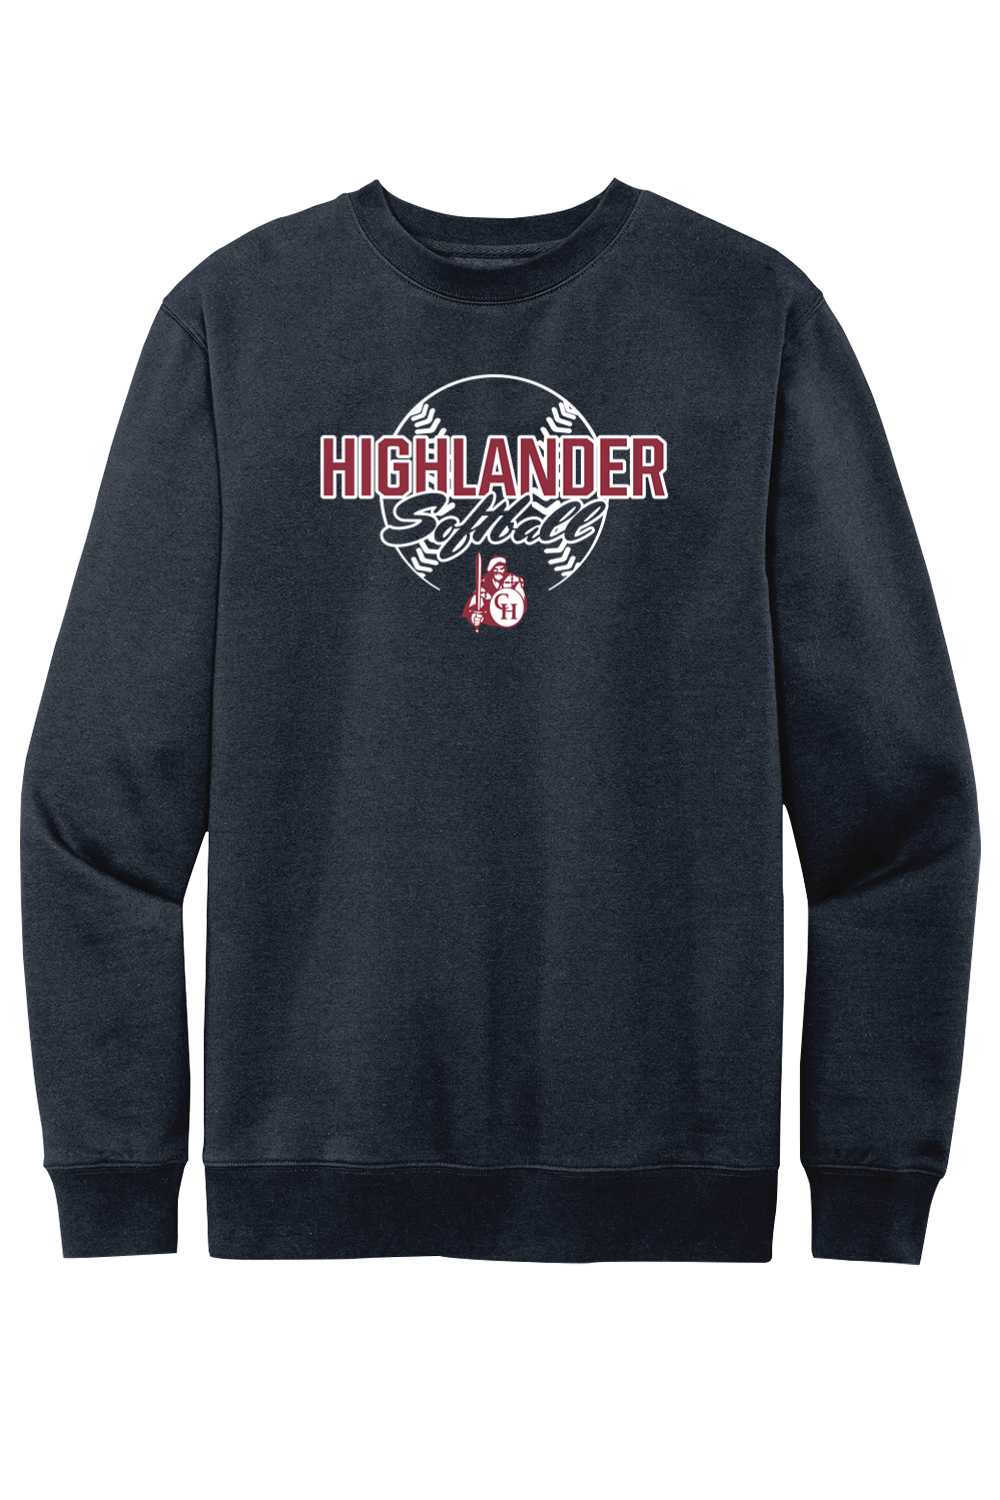 Highlander Softball - Fleece Crewneck Sweatshirt - Yinzylvania